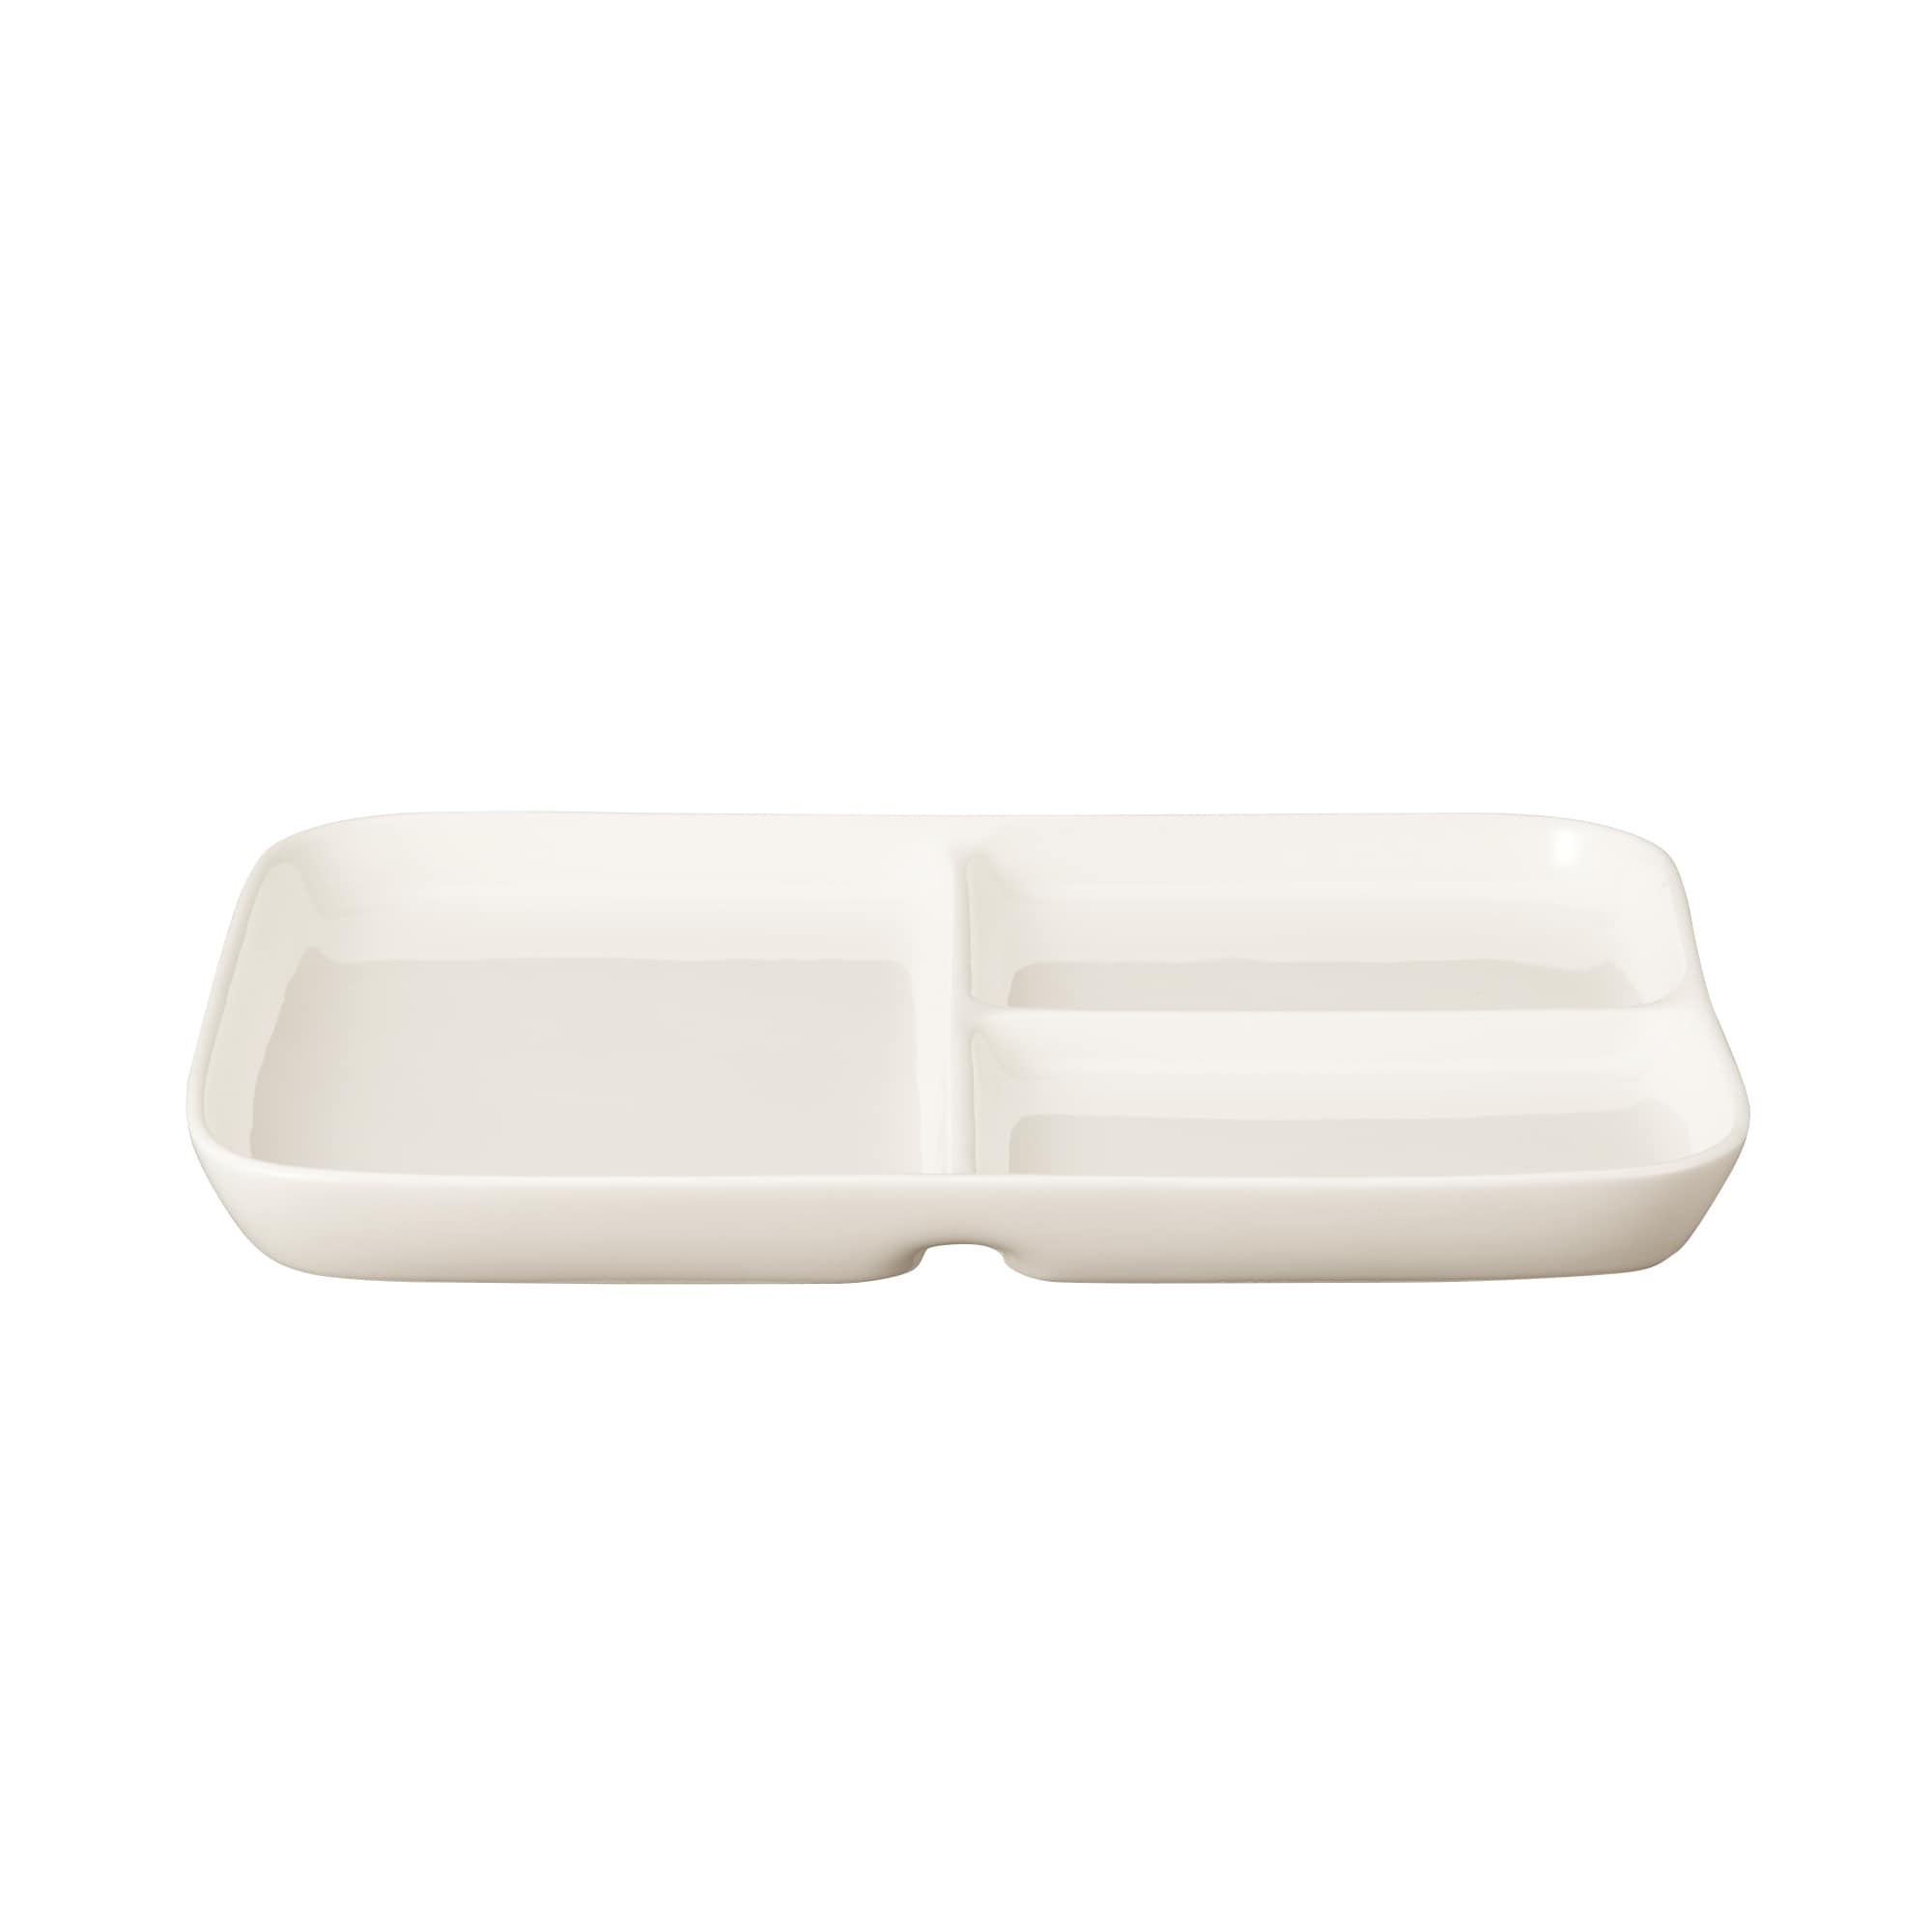 무인양품 일본 주방 플레이팅 접시 그릇 도자기 나눔접시 사각 L 베이지